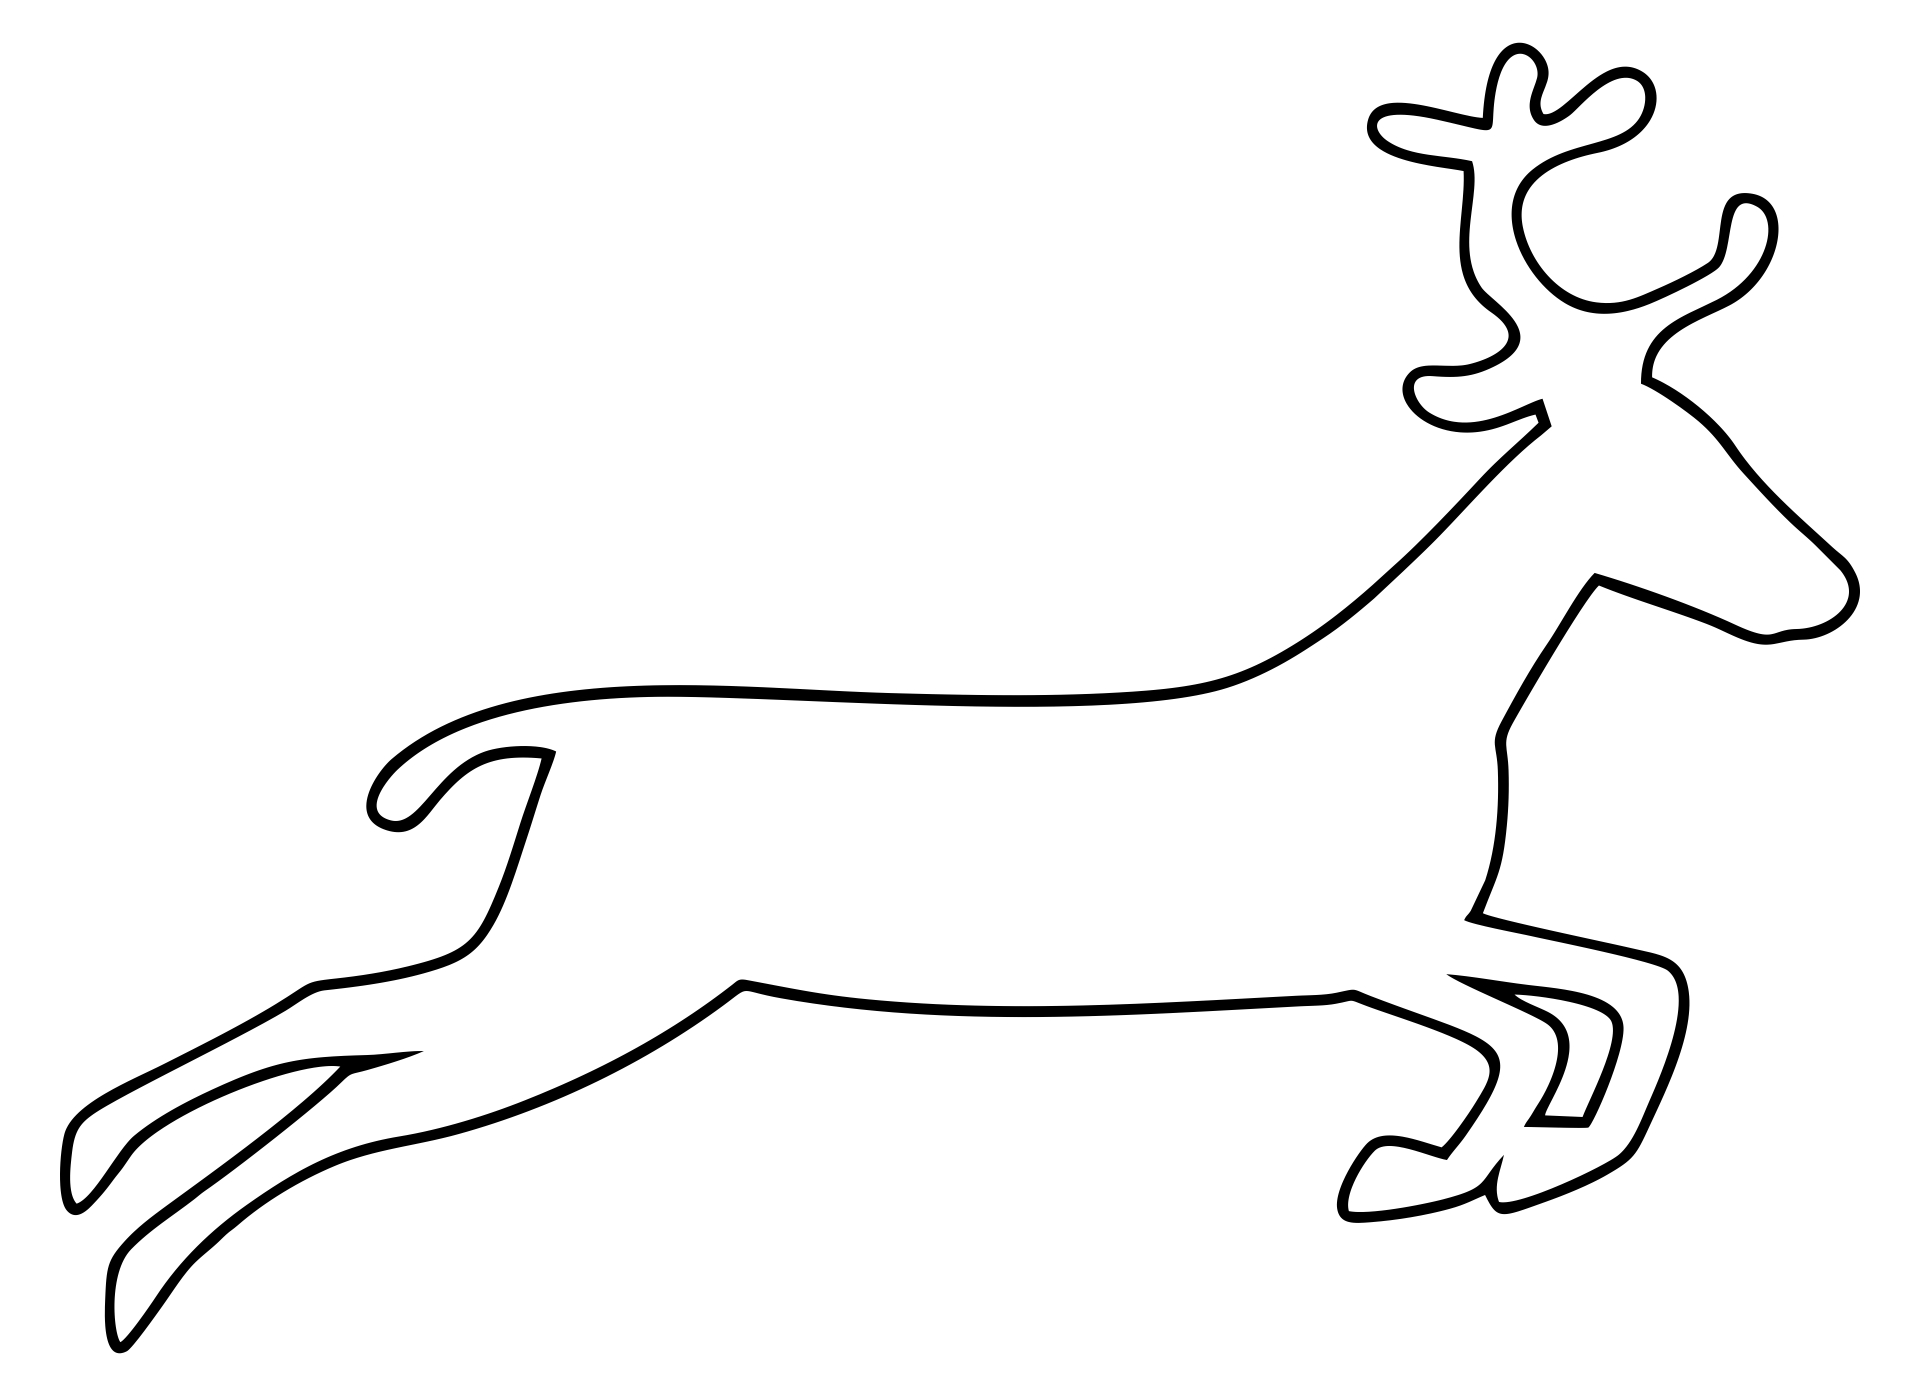 10 Best Printable Reindeer Patterns - printablee.com